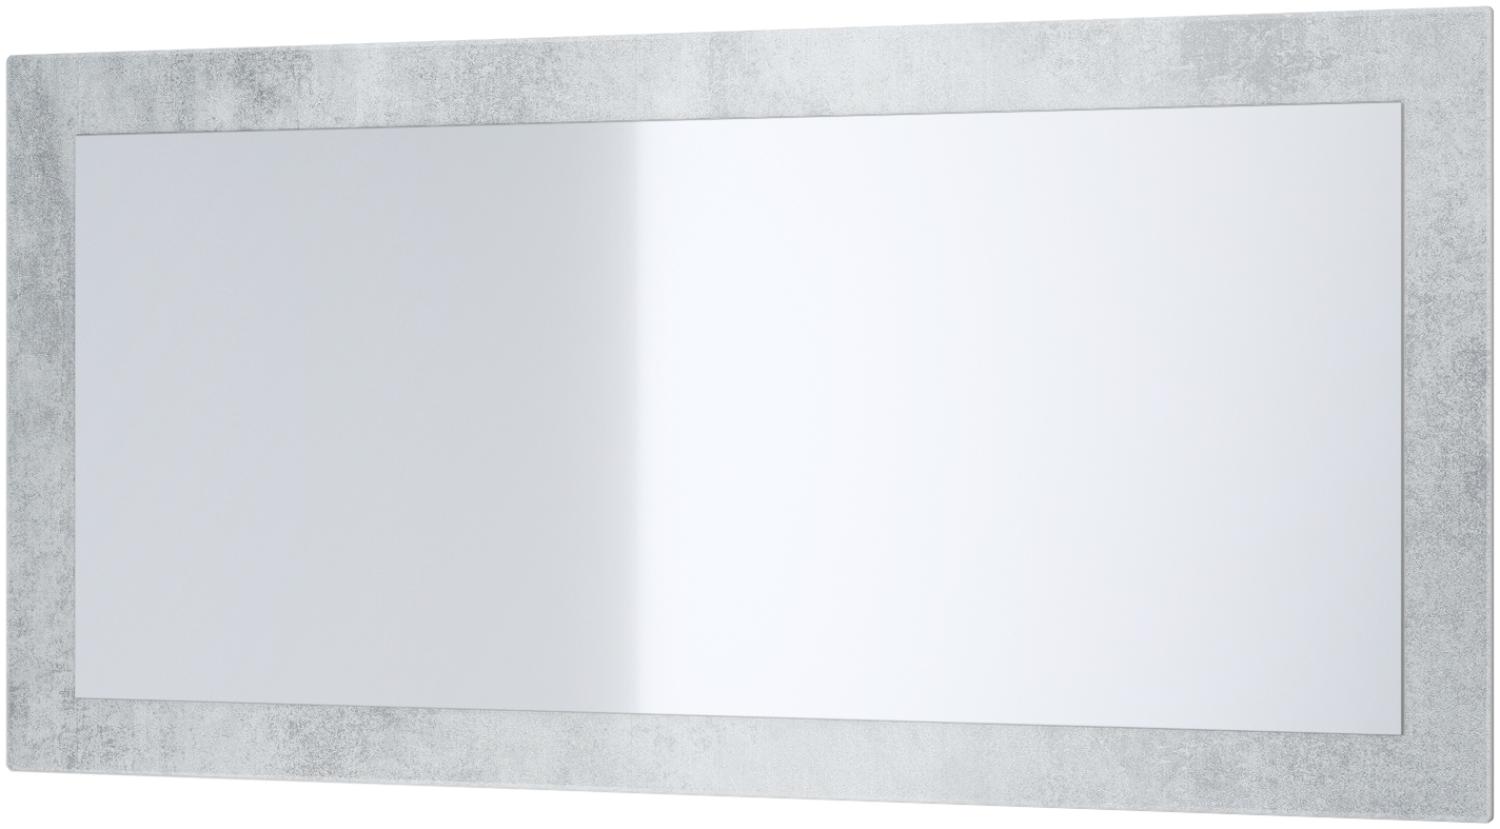 Vladon Spiegel Lima, Wandspiegel mit Rahmen im modernen Stil, Beton Oxid Optik (89 x 45 cm) Bild 1